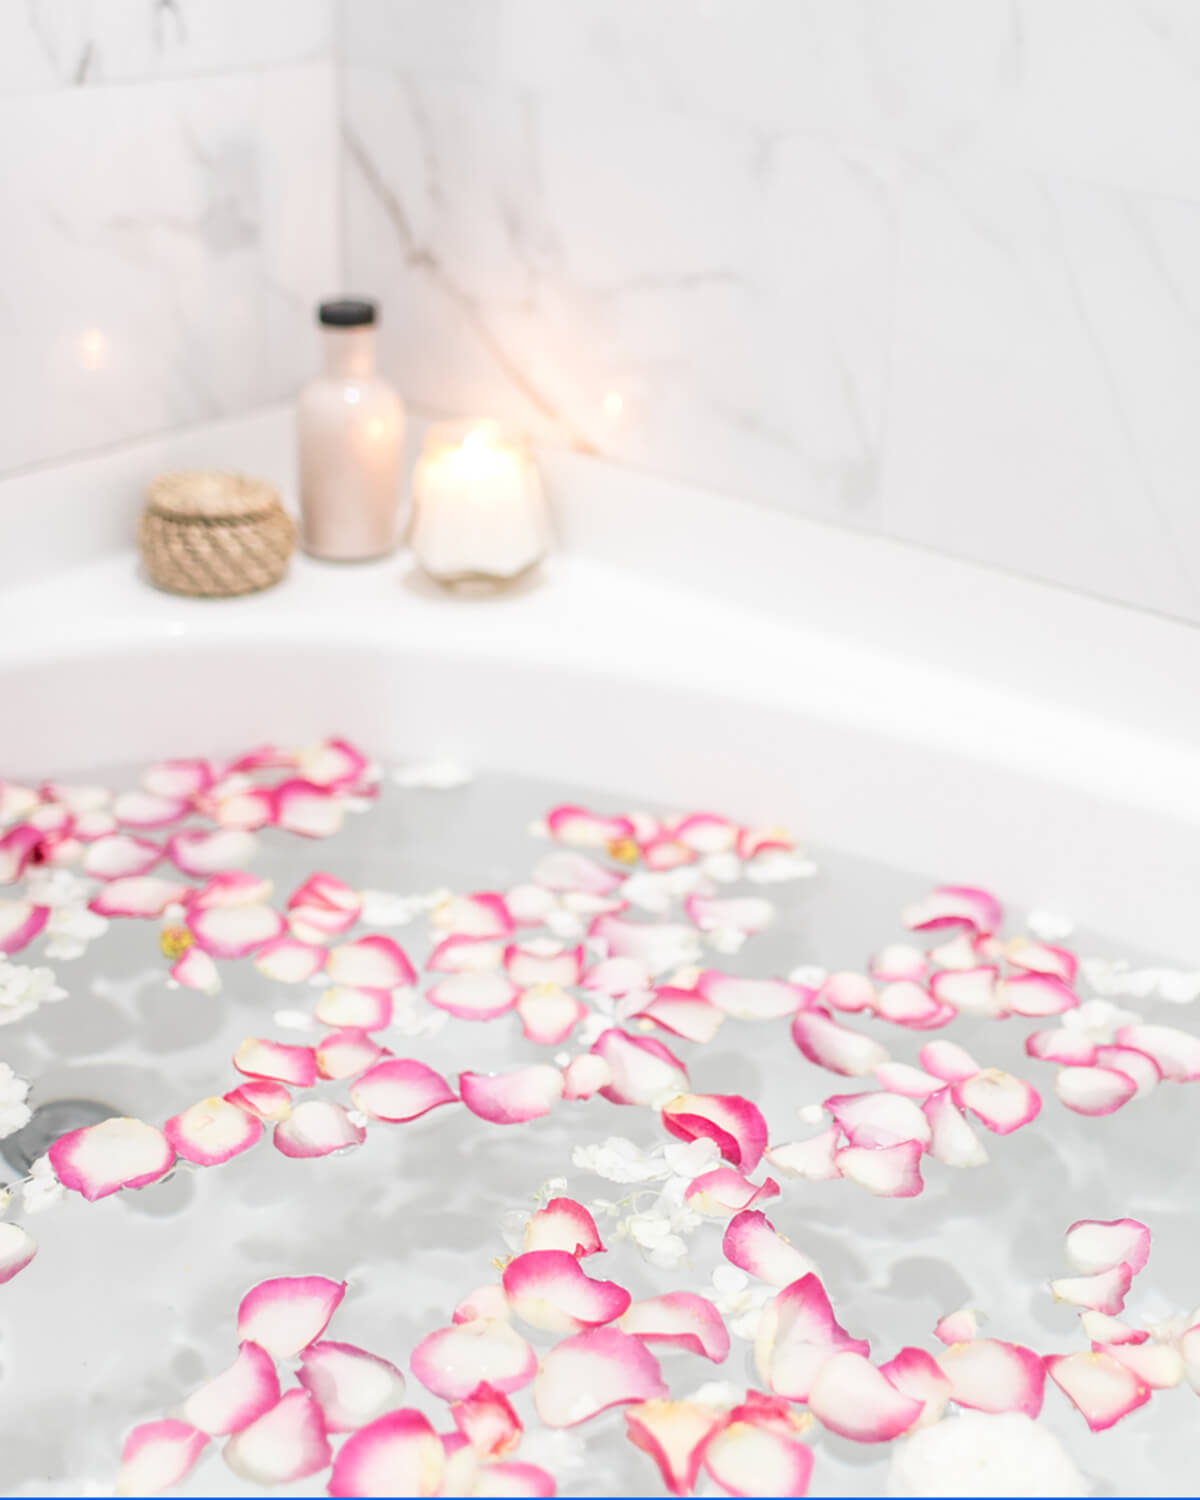 rose petals in a bubble bath